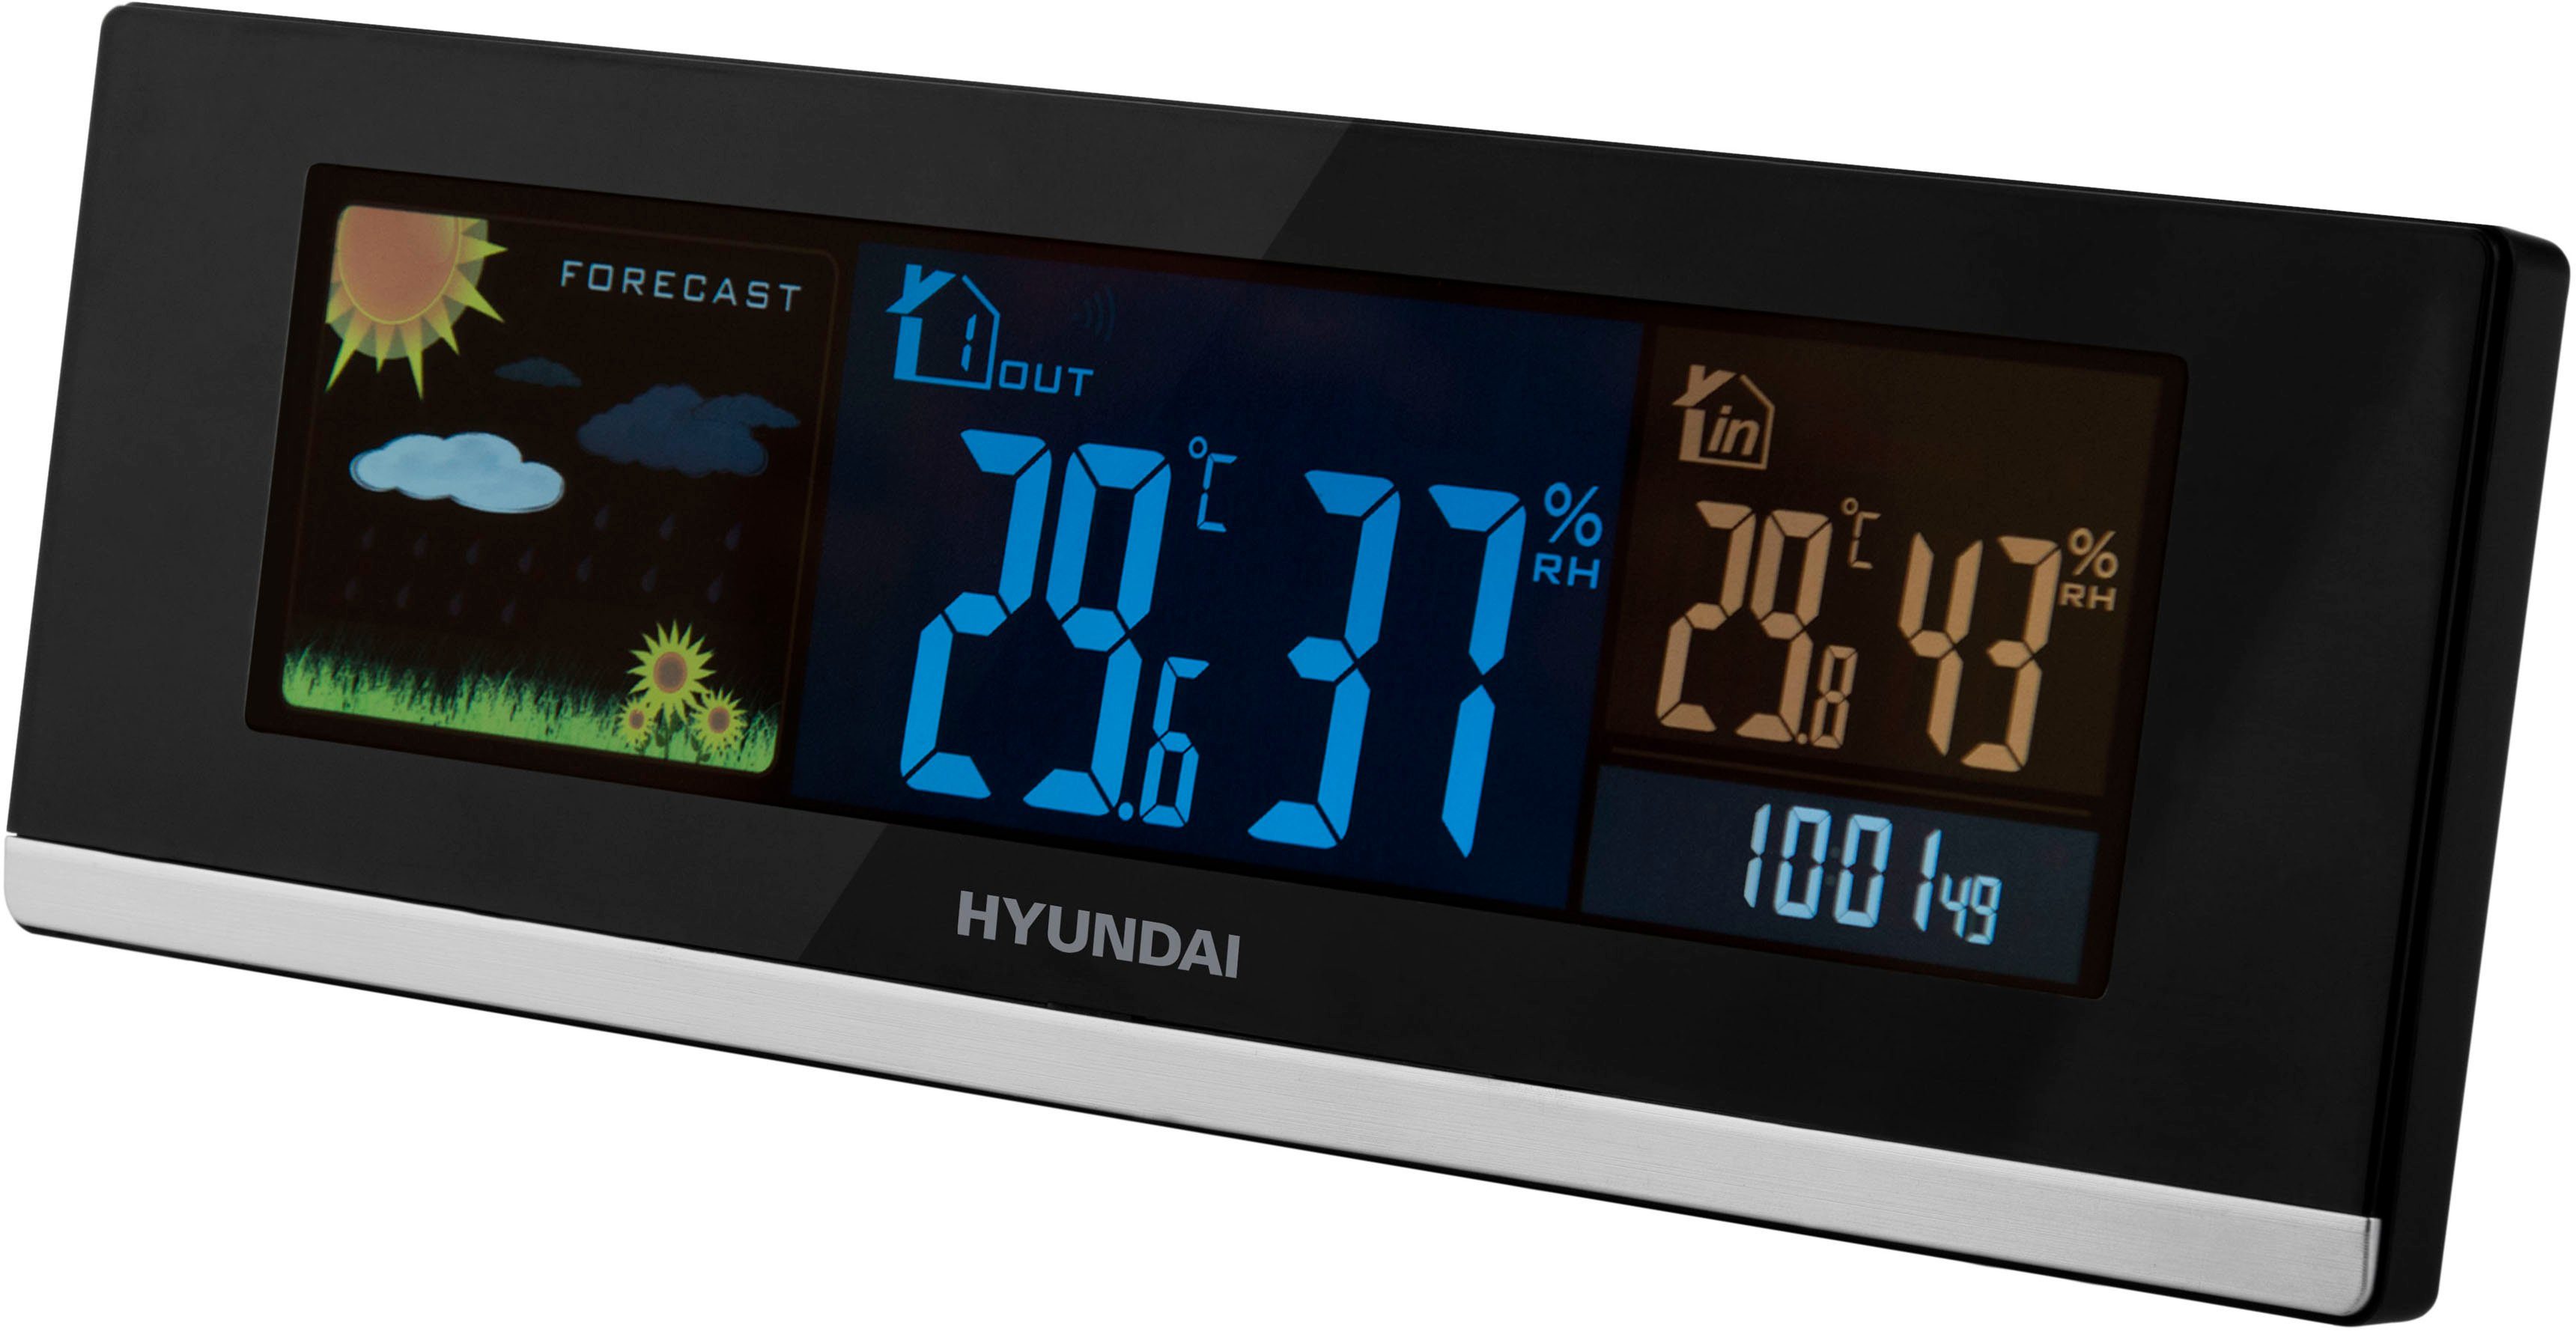 WS farbiges 2468 Display) Außensensor, Wetterstation Hyundai (mit Hyundai